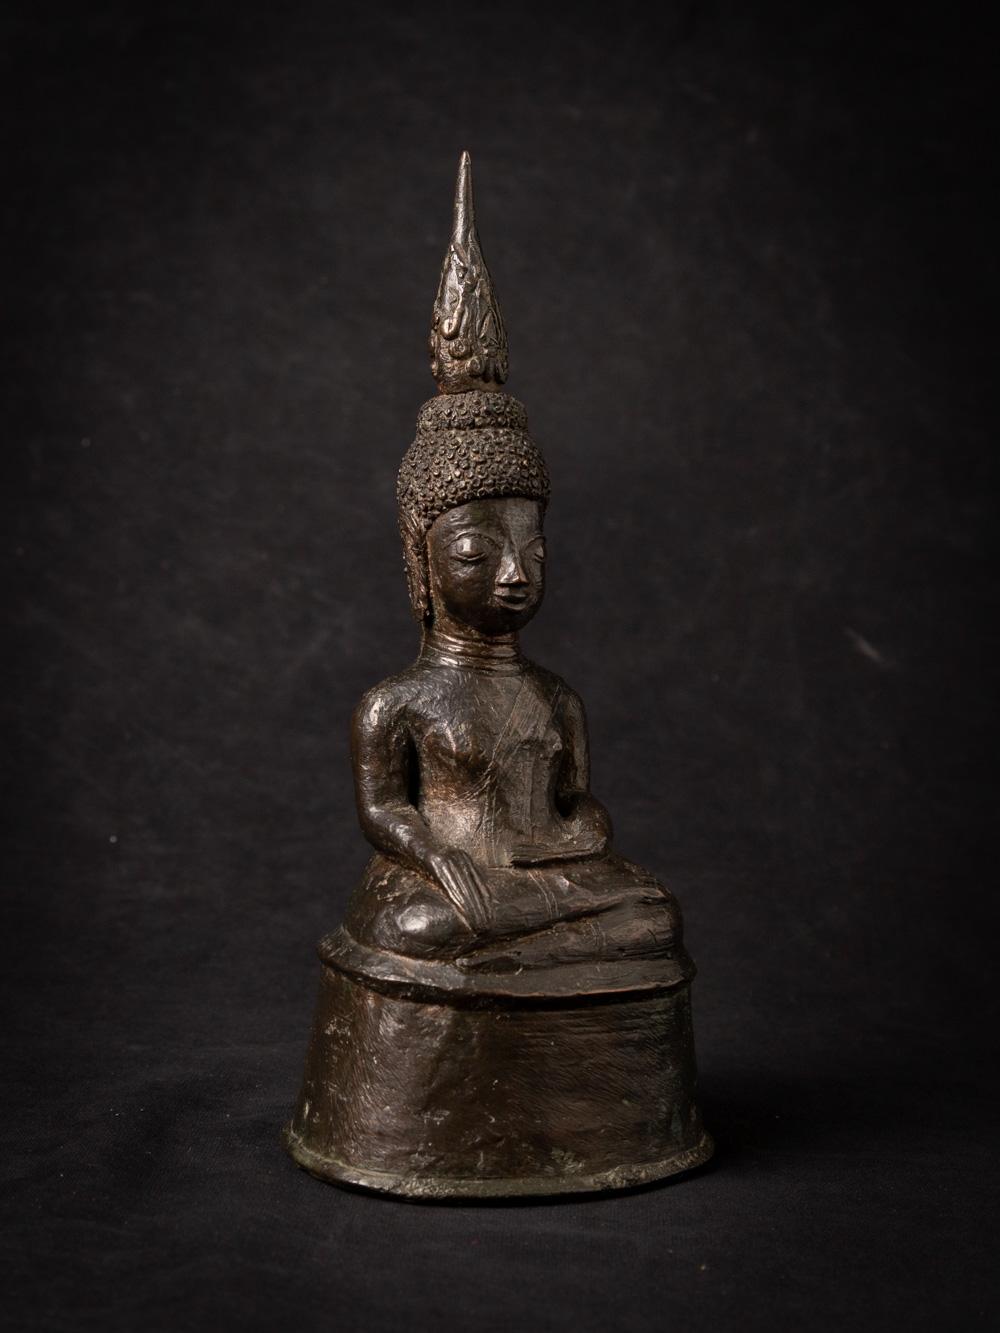 Bronze 16-17th century antique bronze Buddha statue from Laos in Bhumisparsha Mudra